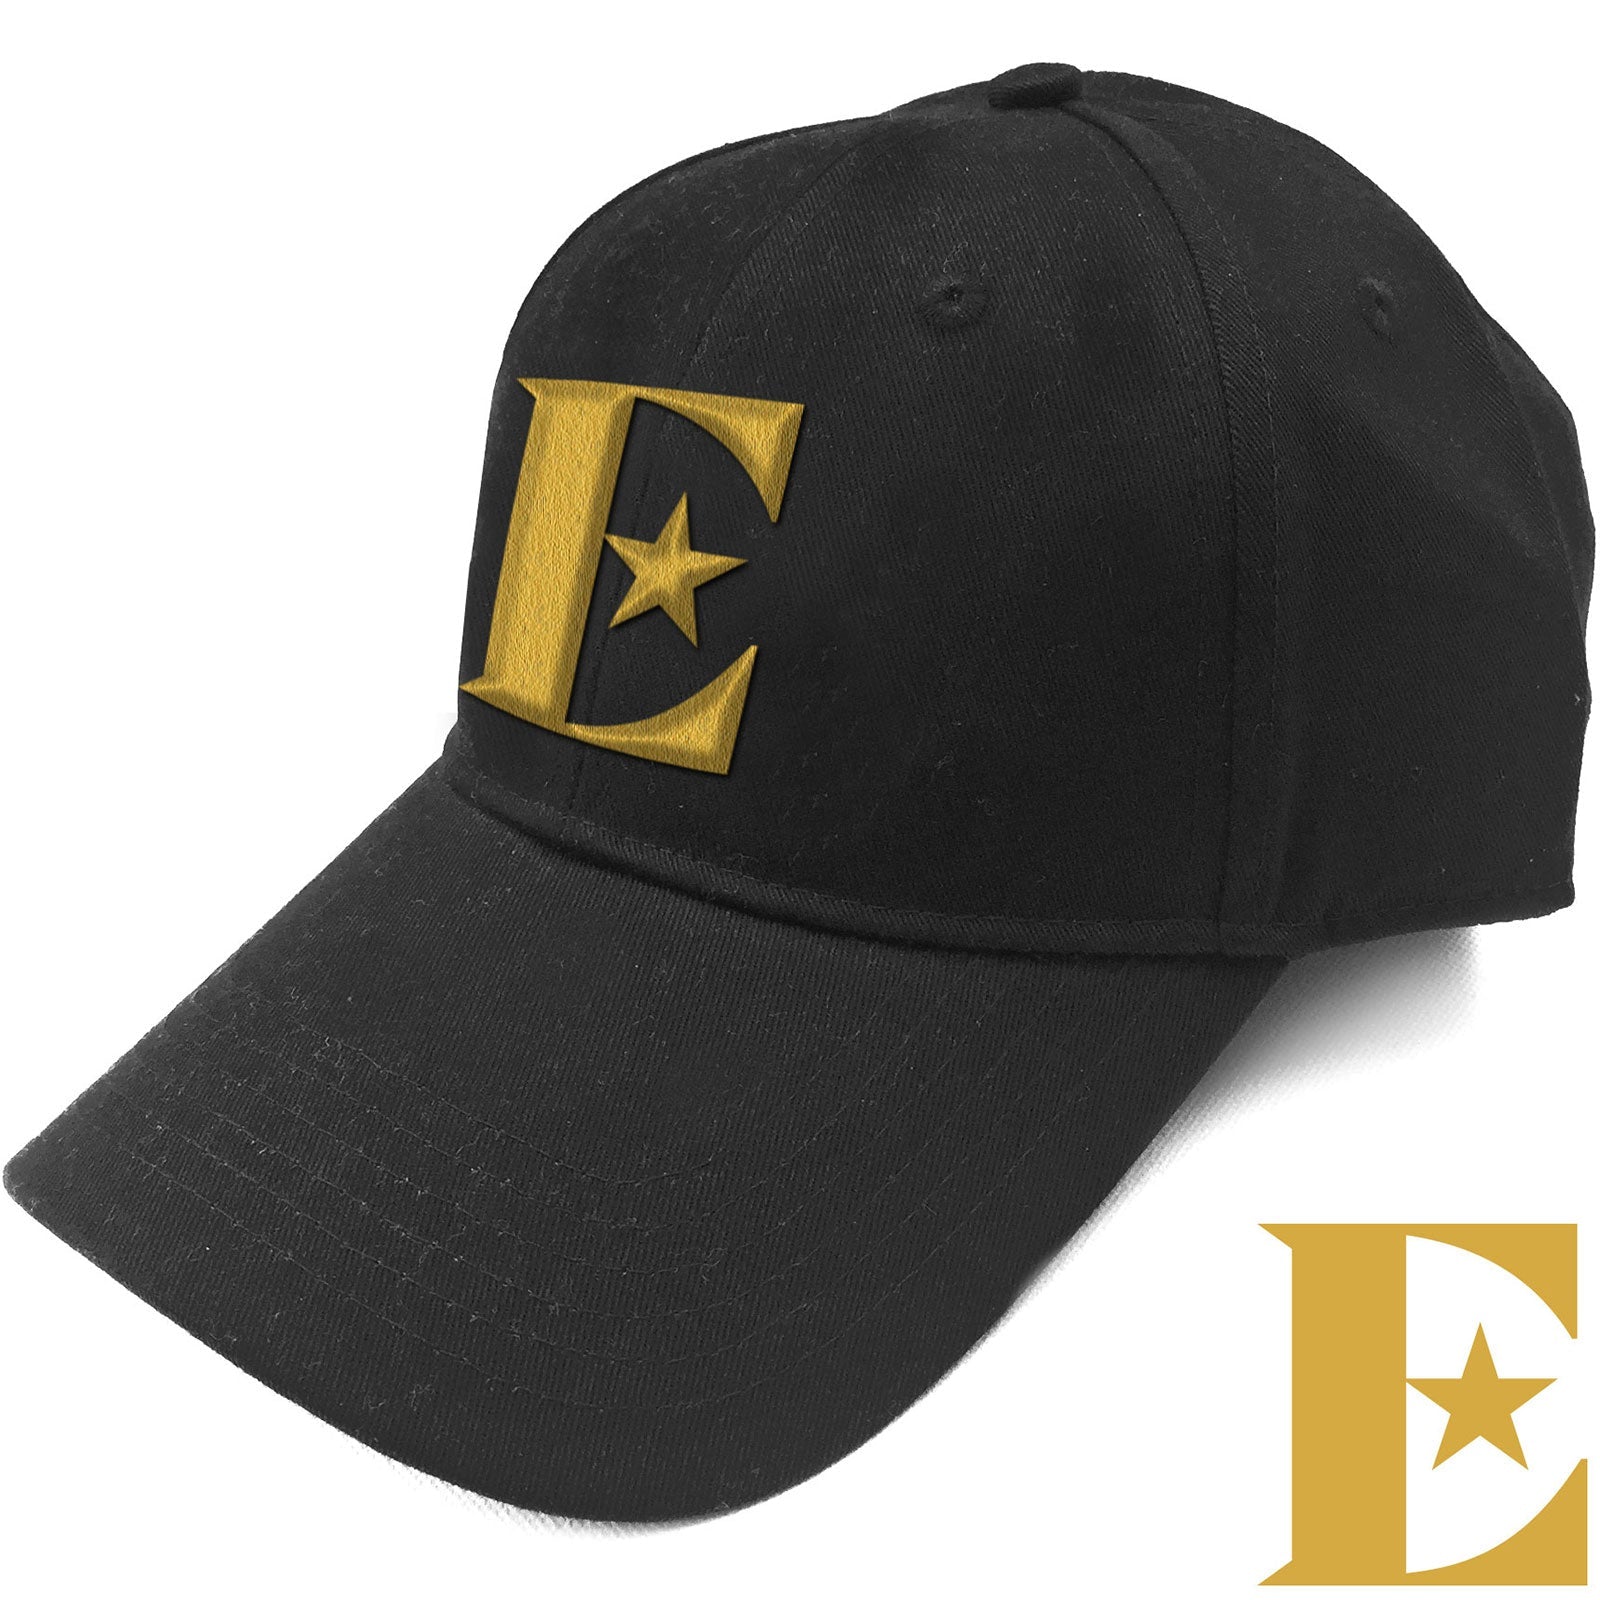 Elton John Baseball Cap - Gold E Design - Official Licensed Product - Jelly Frog